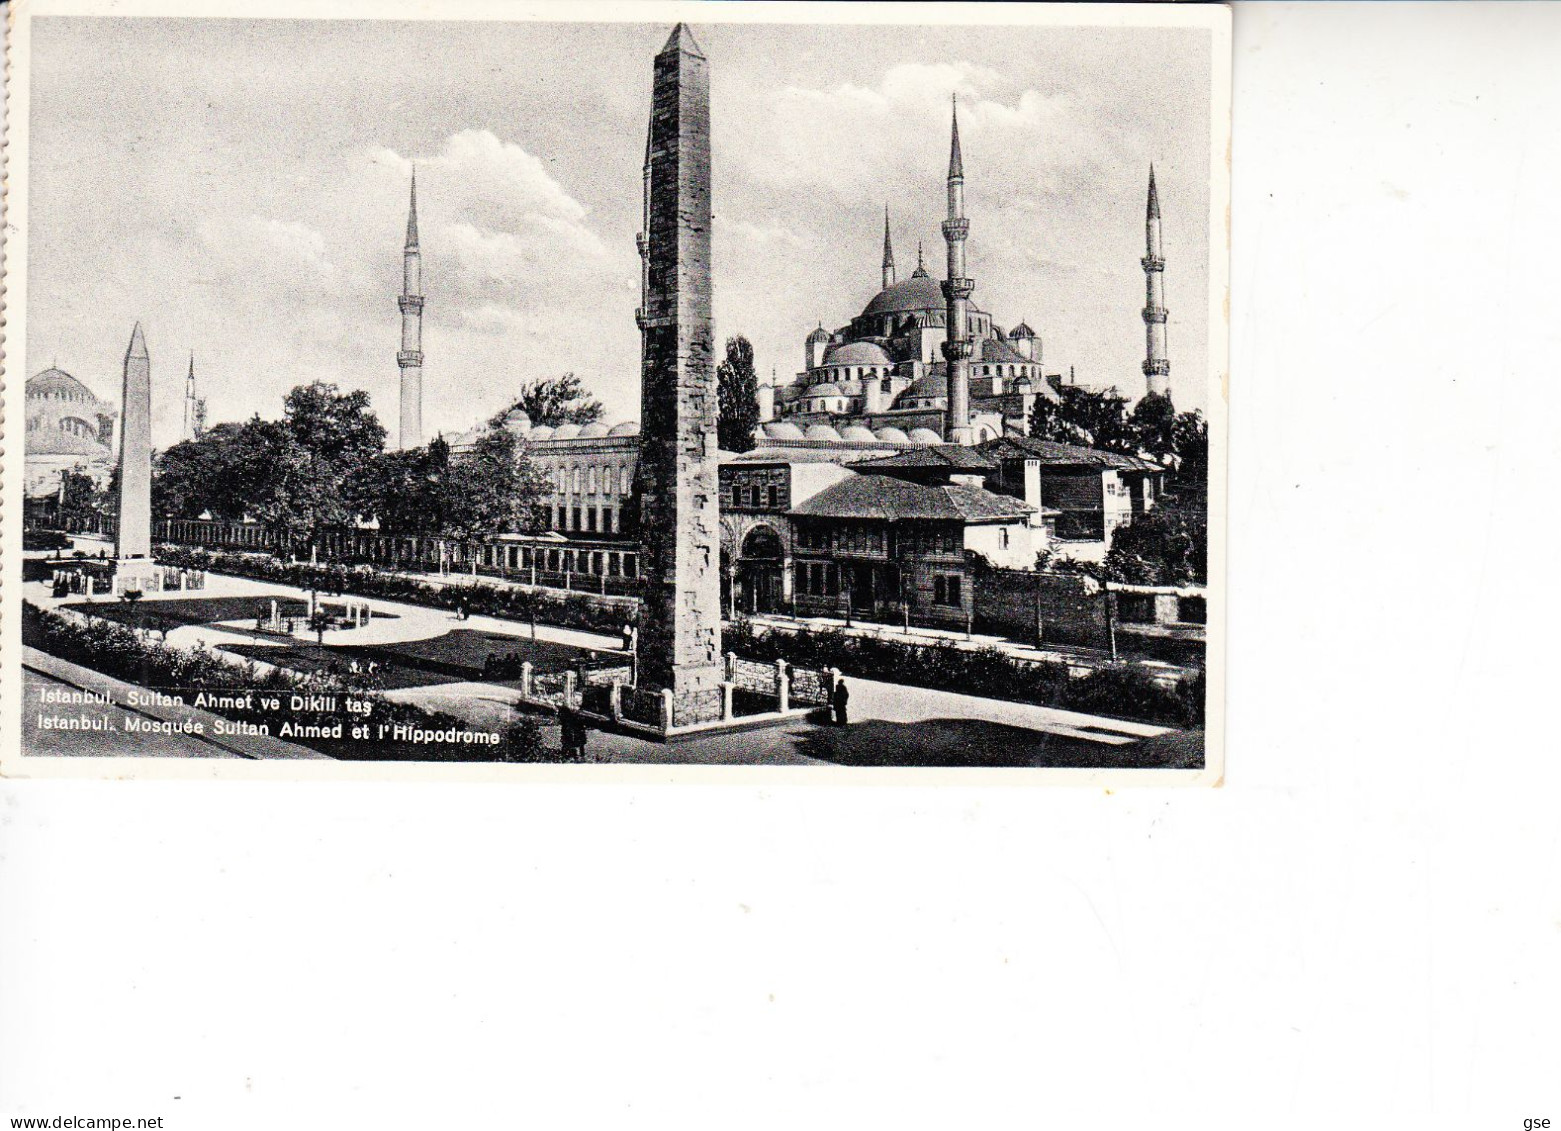 TUECHIA  1946 - Cartolina Per Zurich - Lettres & Documents